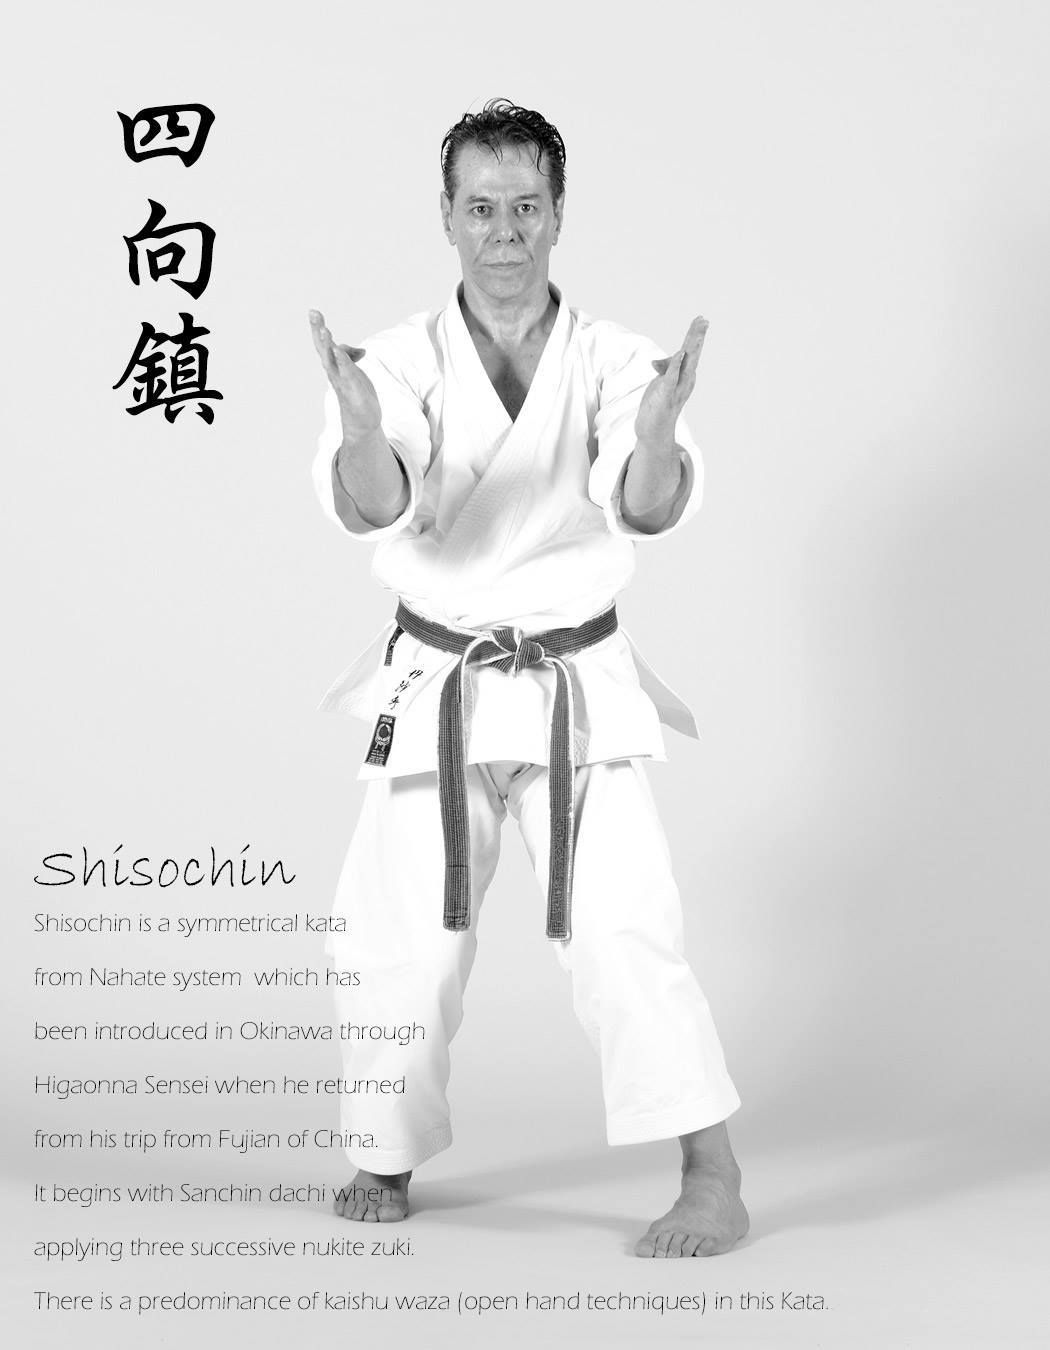 Pin by Tanzadeh Shitokai on Shito-ryu karate | Karate, Martial arts